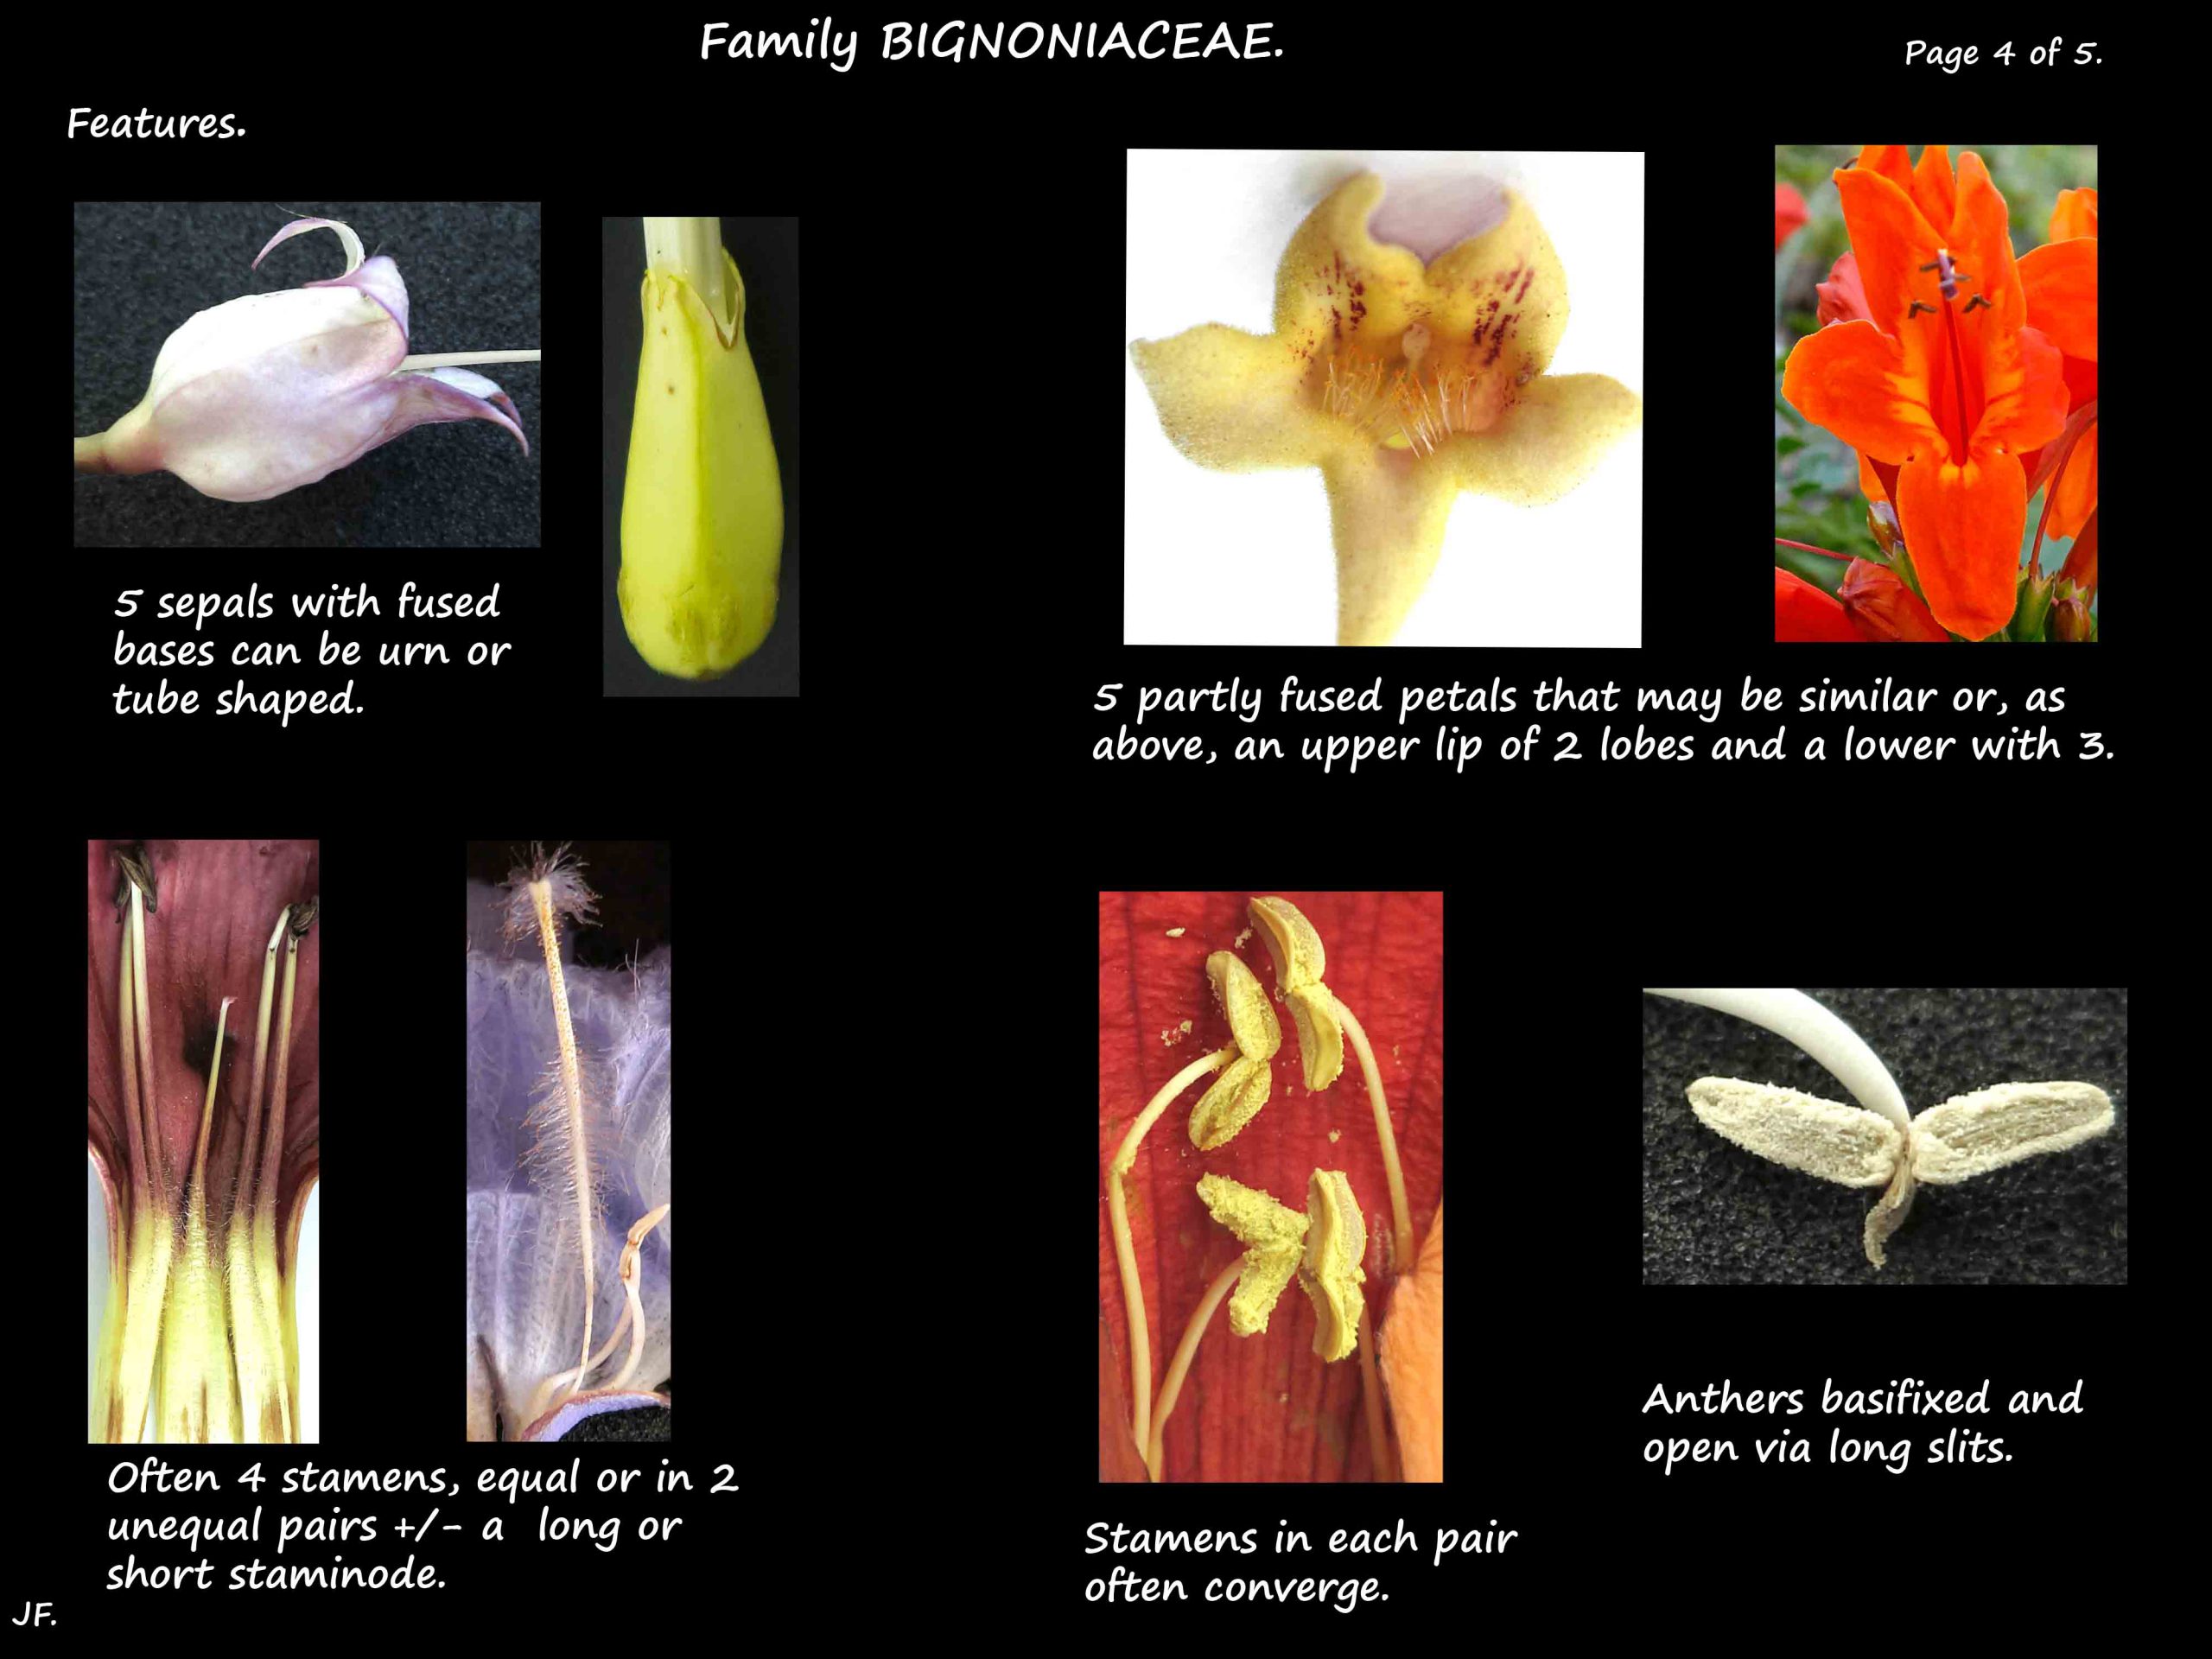 4 Bignoniaceae stamens